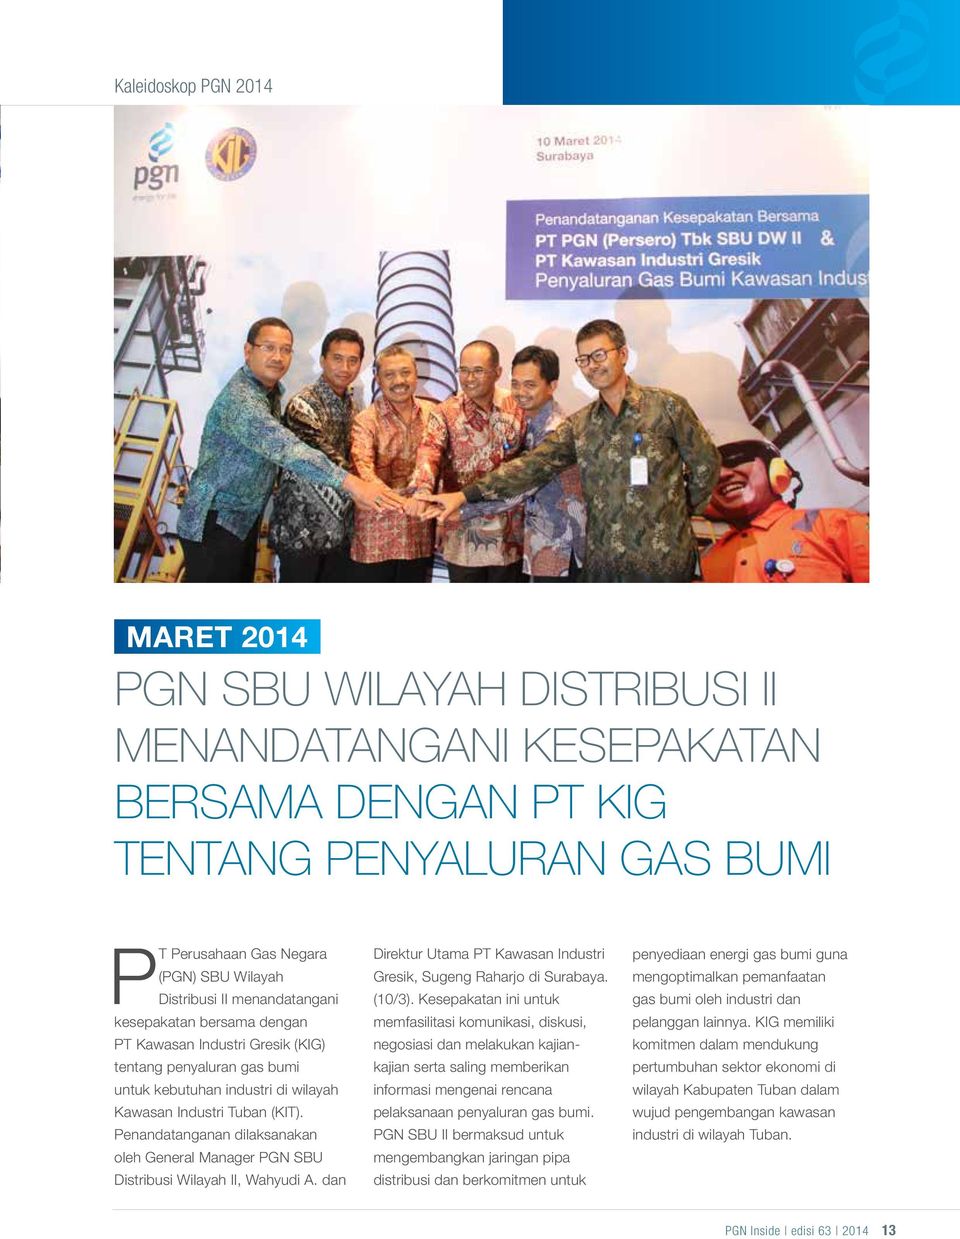 Penandatanganan dilaksanakan oleh General Manager PGN SBU Distribusi Wilayah II, Wahyudi A. dan Direktur Utama PT Kawasan Industri Gresik, Sugeng Raharjo di Surabaya. (10/3).